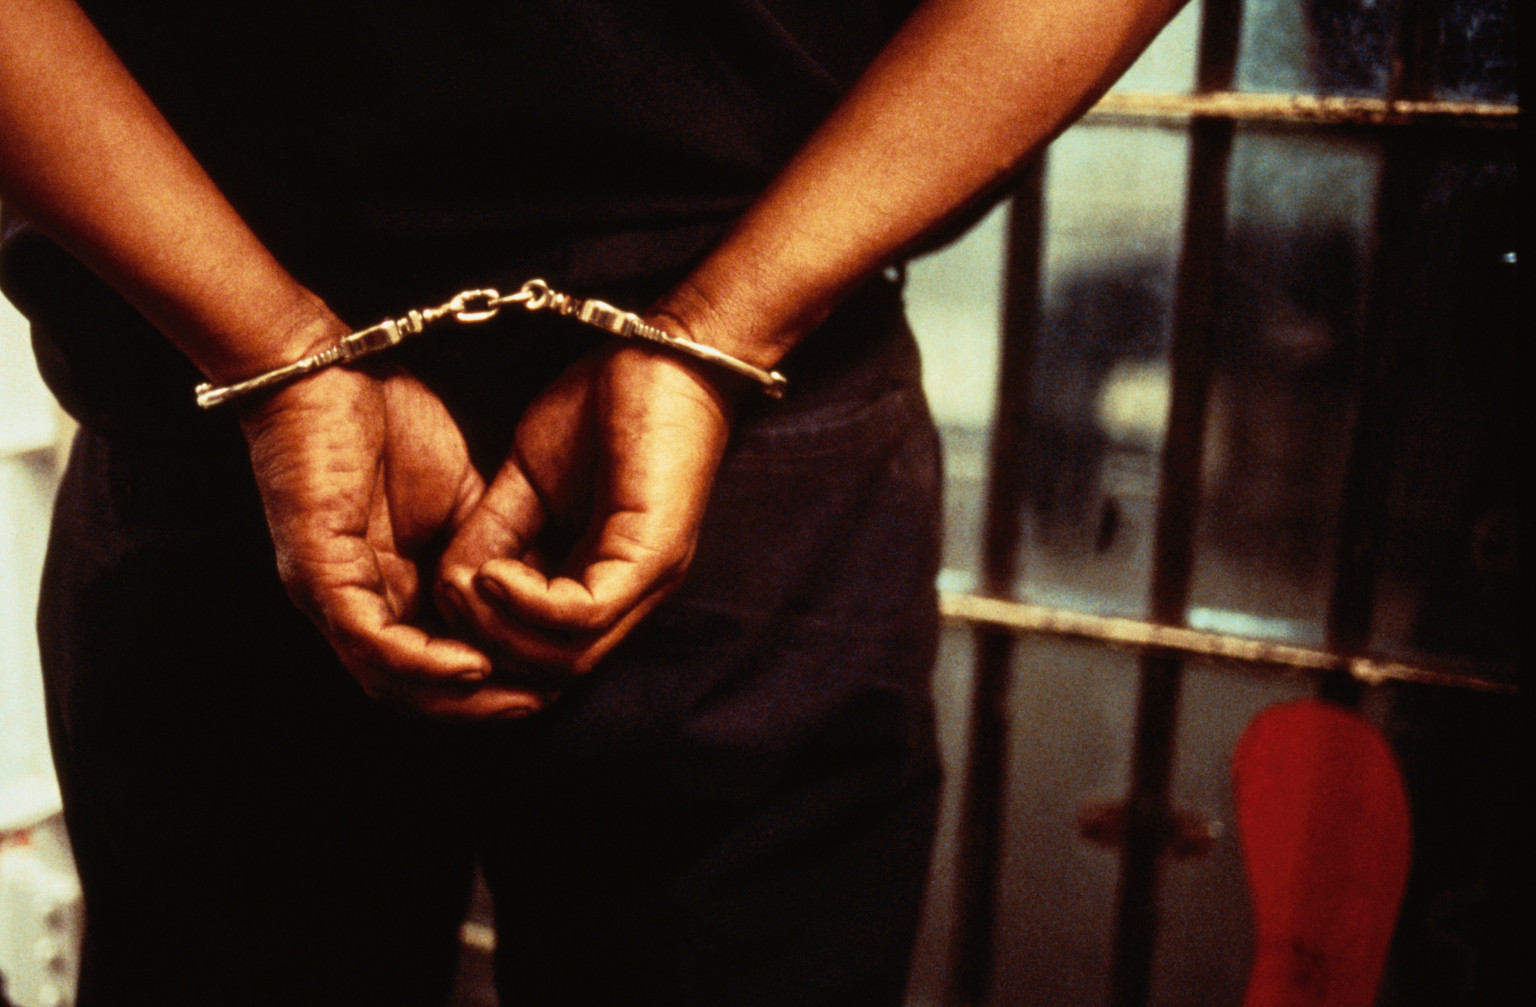 Police arrest suspected child trafficker